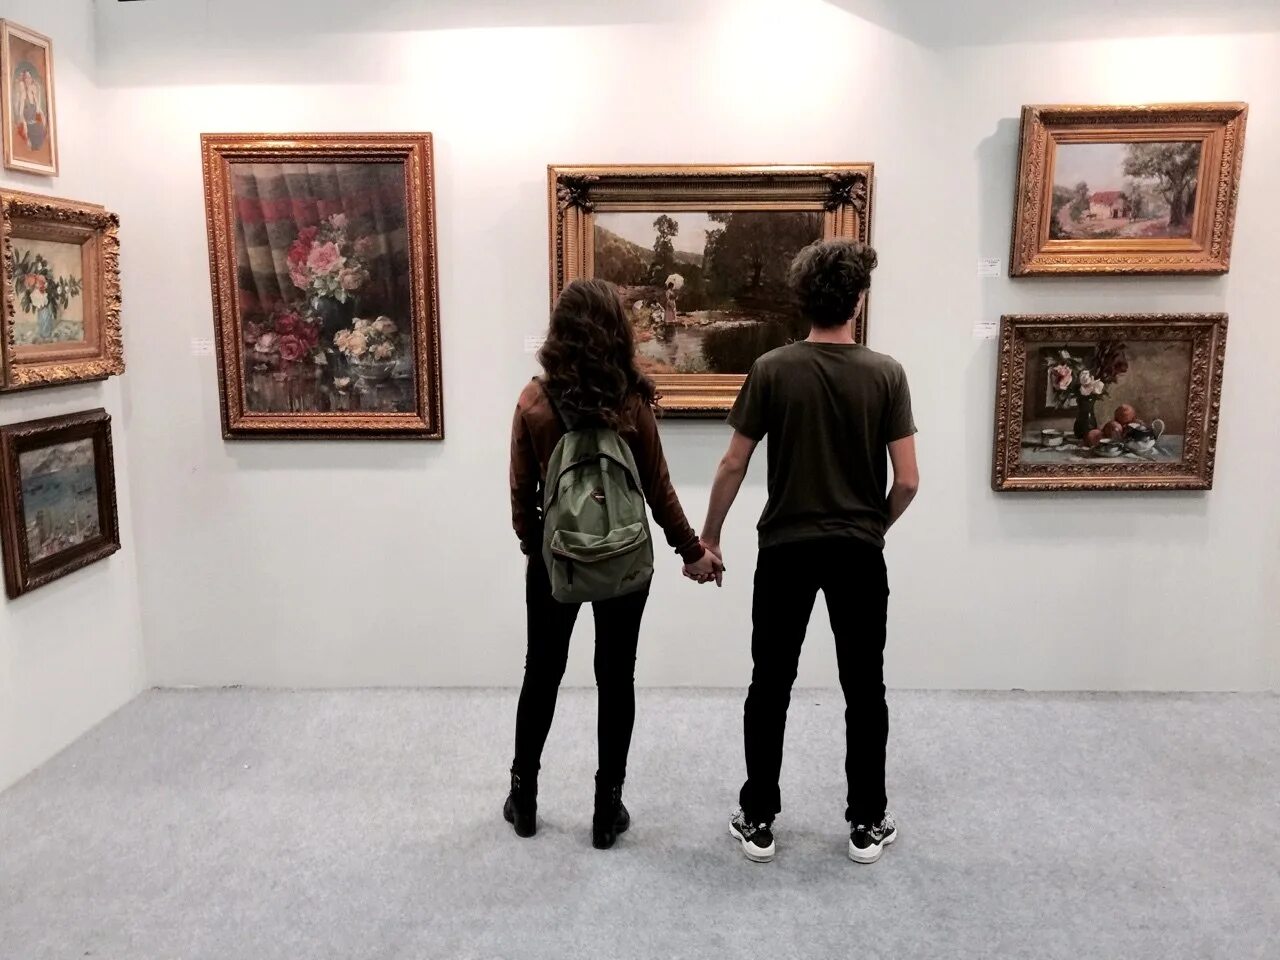 Пара в картинной галерее. Люди в галерее. Девушка перед картиной. Парень в музее.